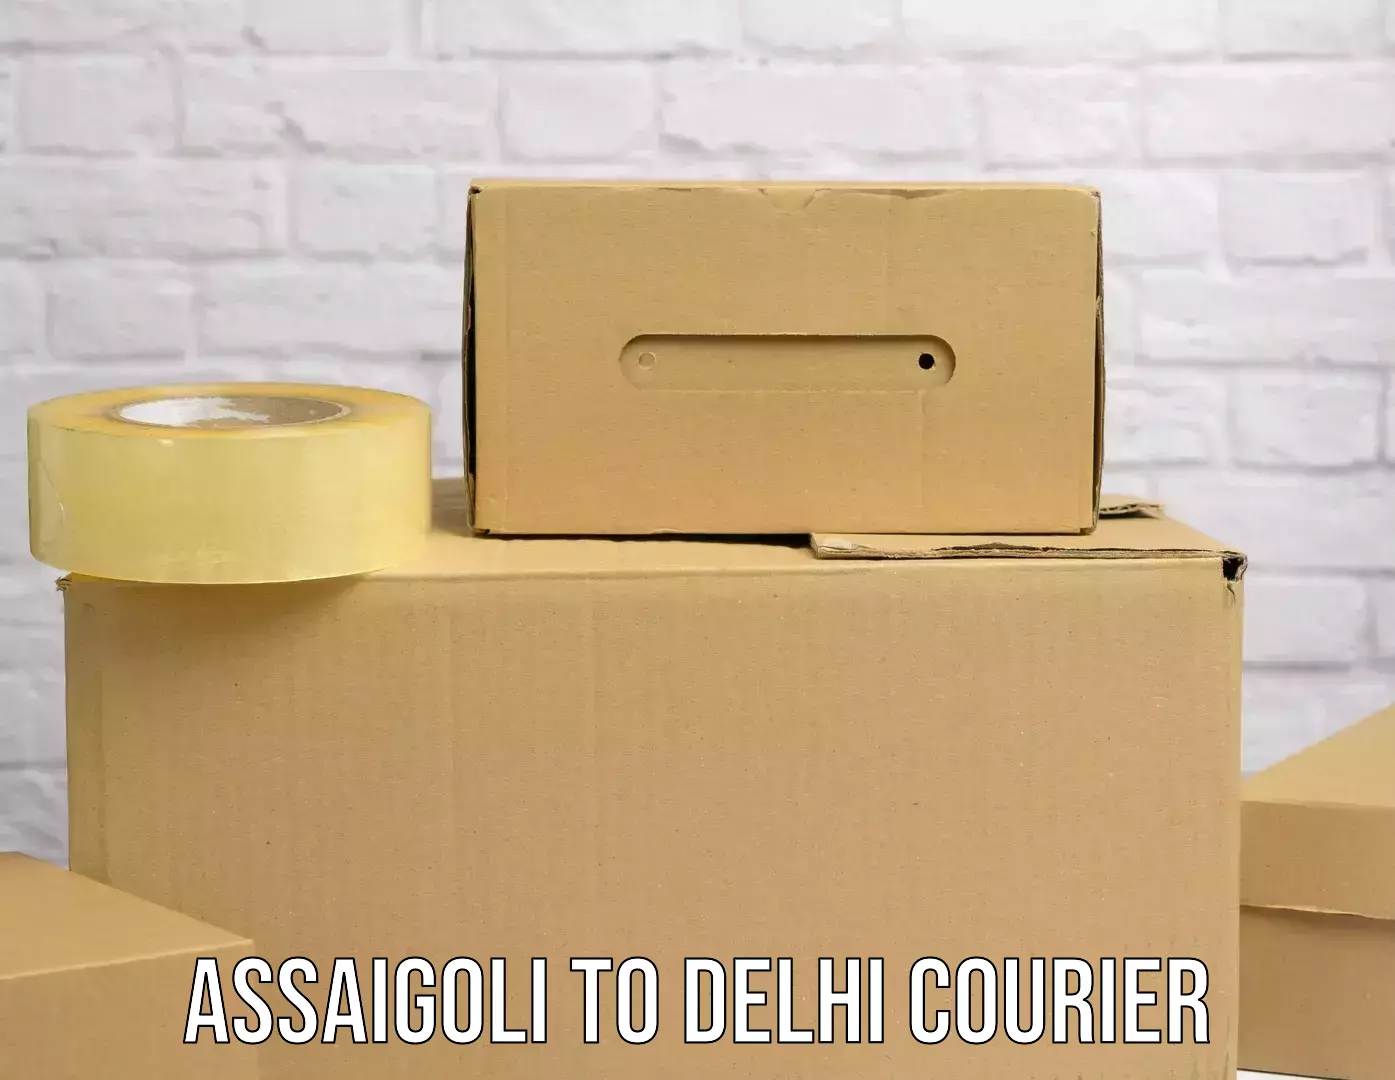 Reliable parcel services Assaigoli to Delhi